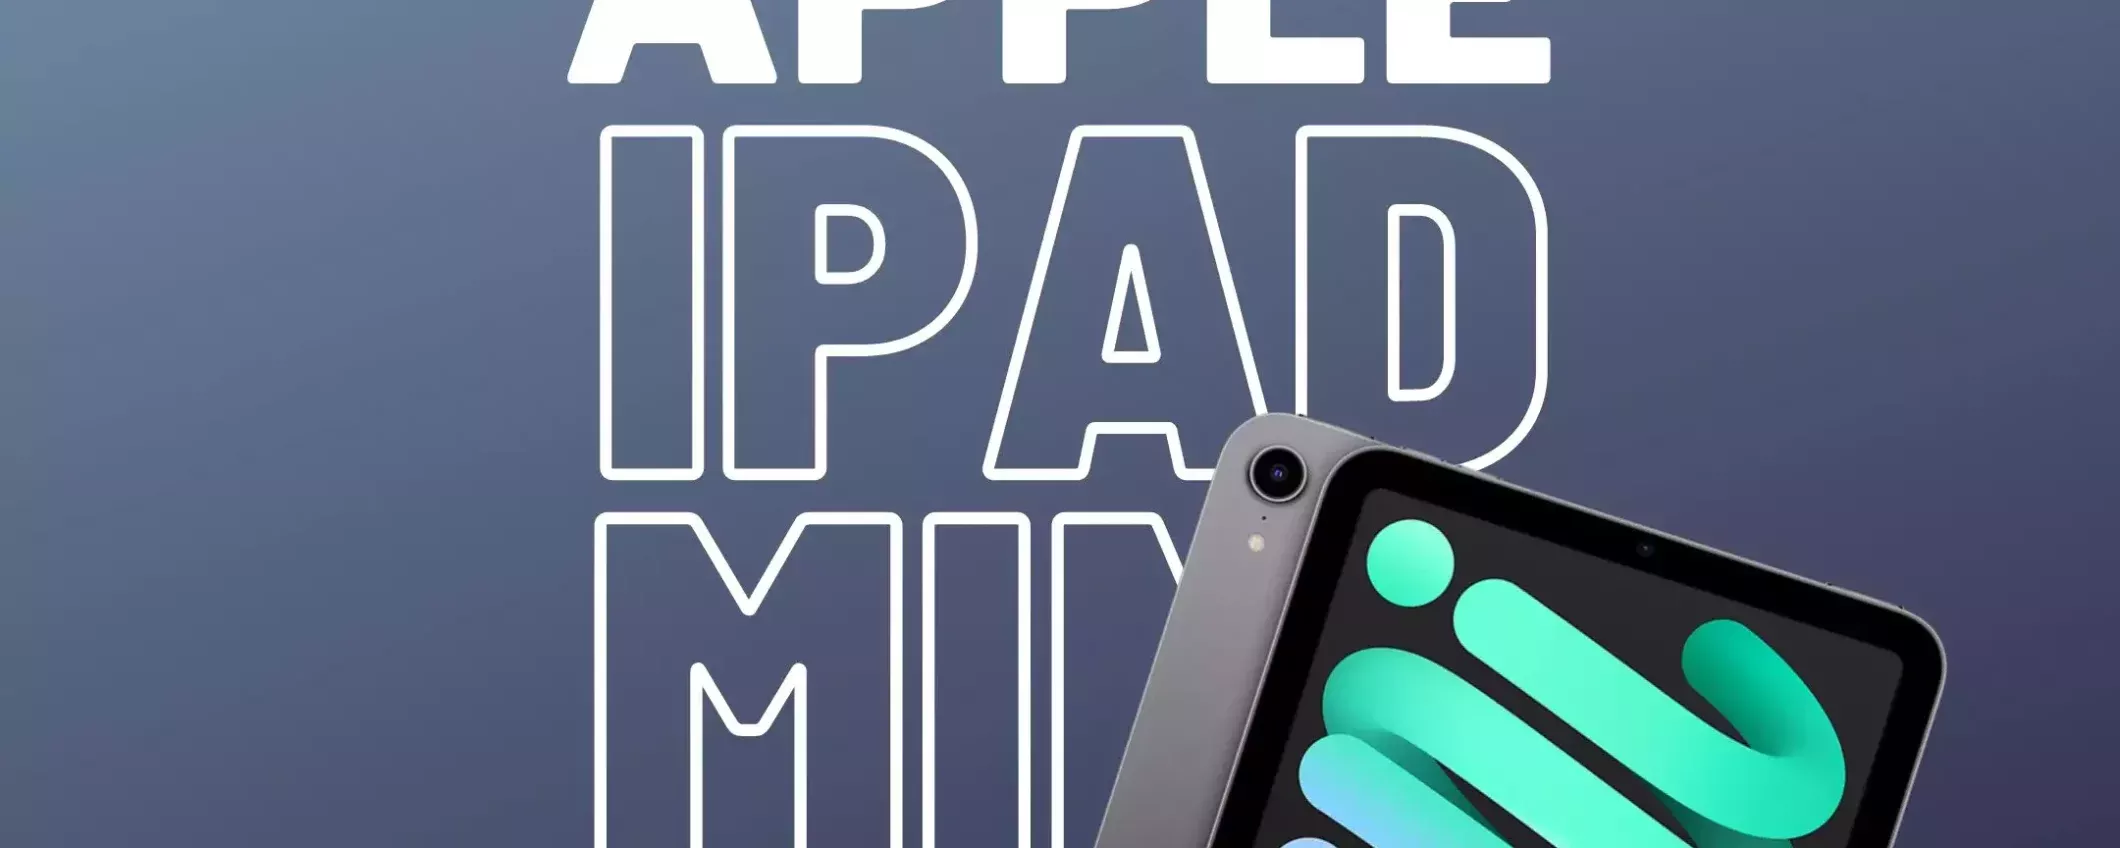 Apple lancerà un nuovo iPad mini entro la fine dell'anno